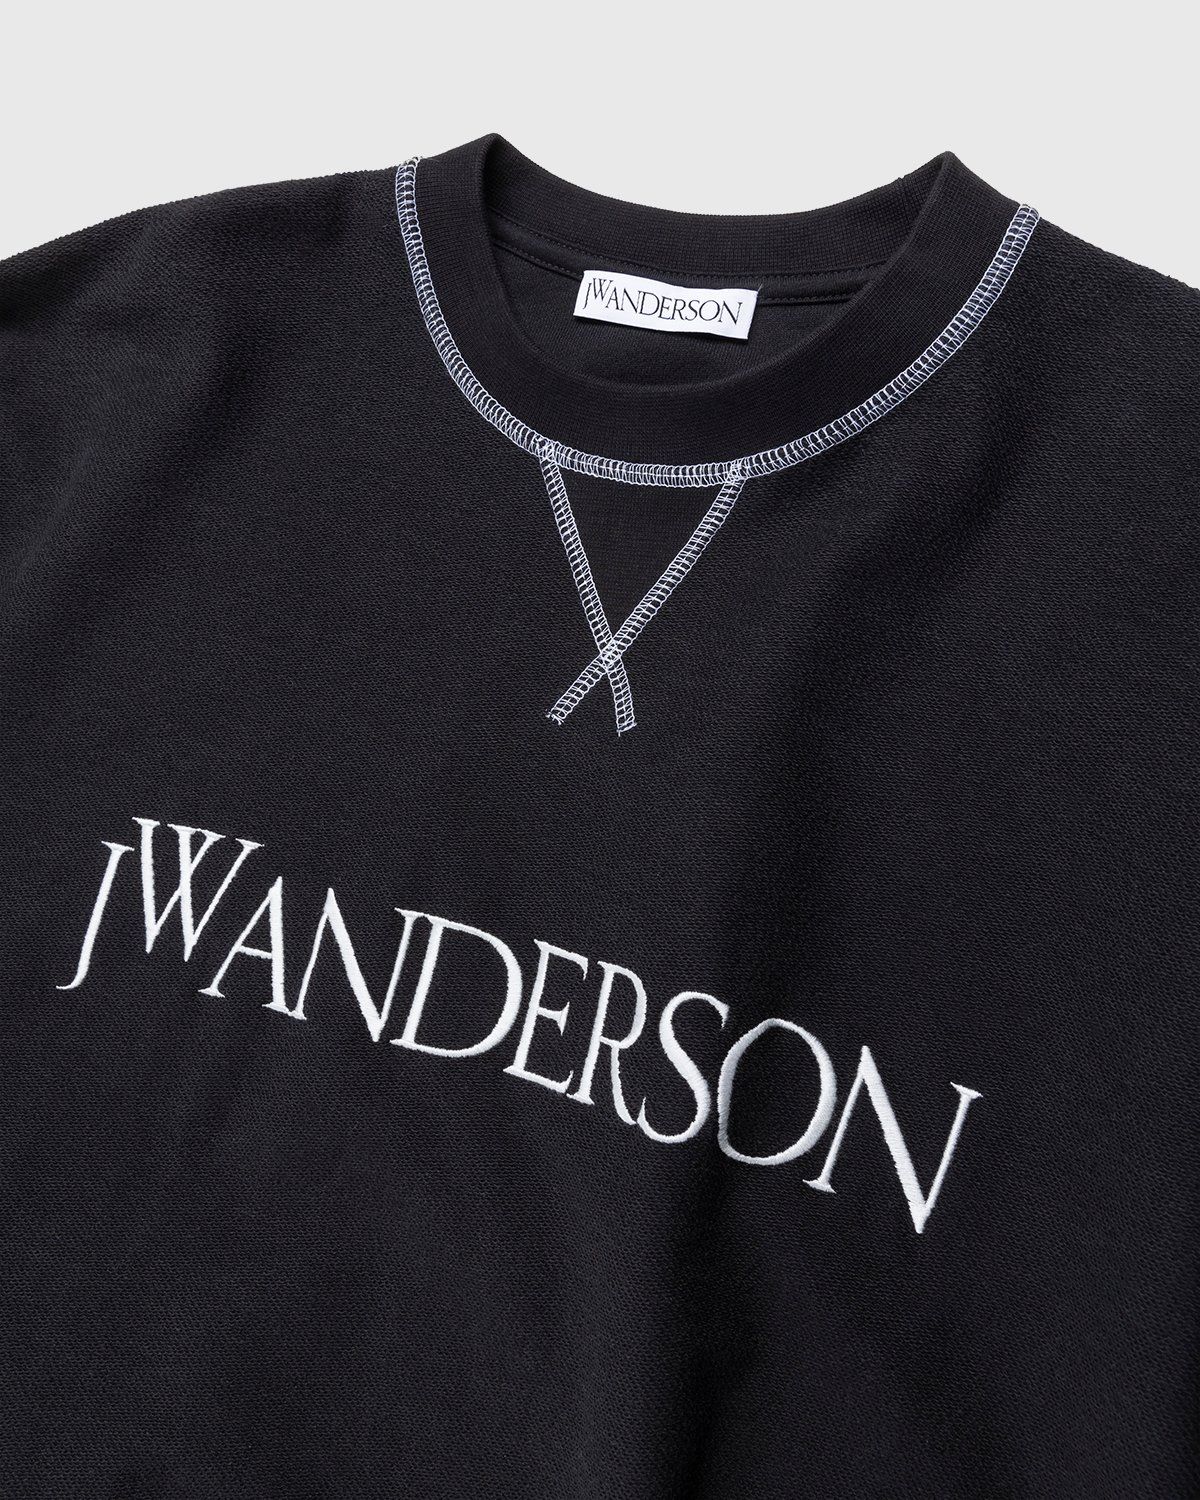 J.W. Anderson – Inside Out Contrast Sweatshirt Black - Sweats - Black - Image 3